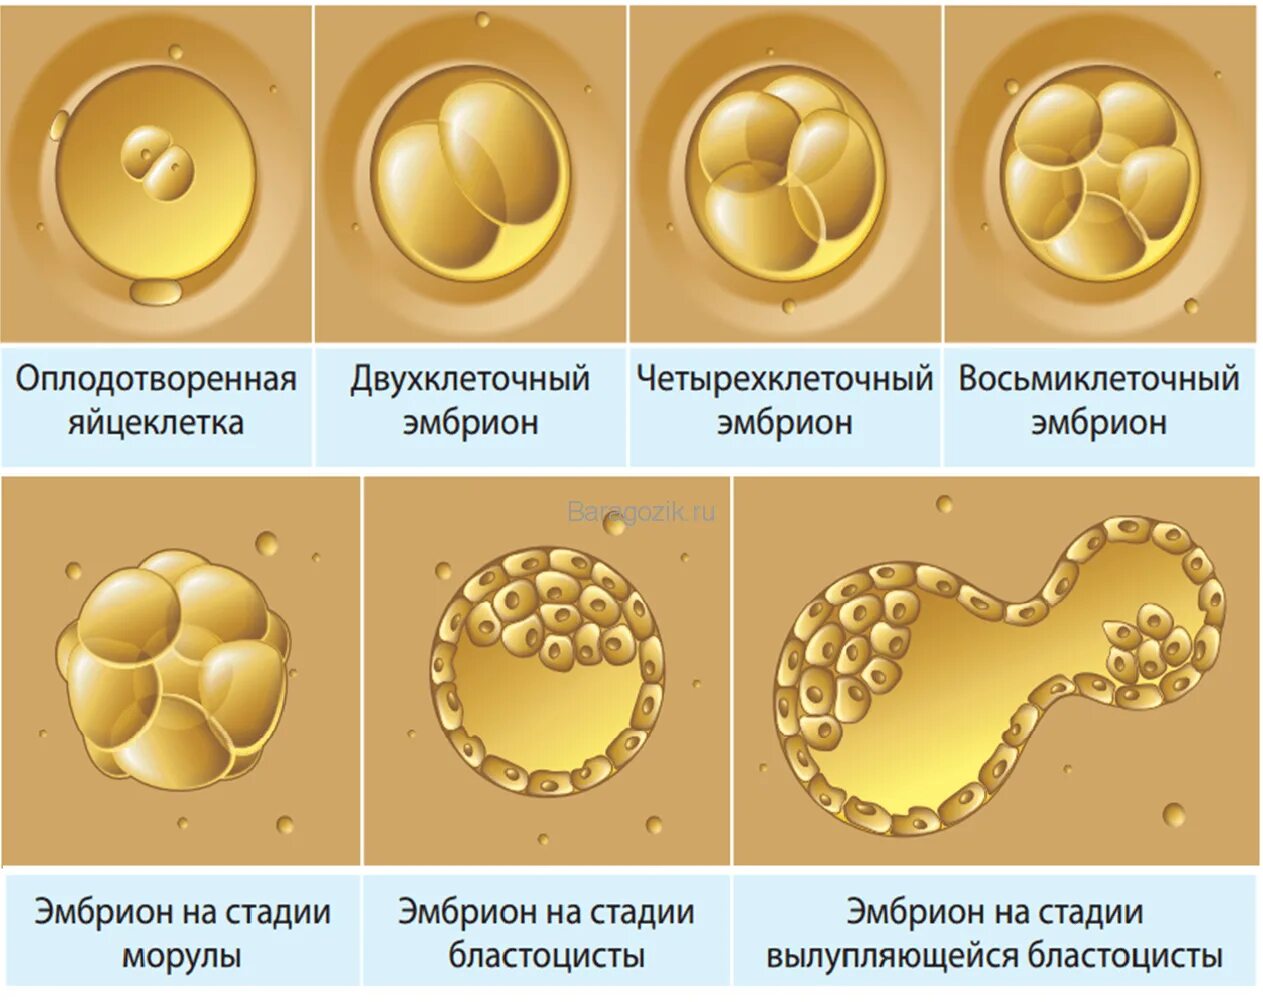 Эко эмбрион морула. Стадии развития оплодотворенной яйцеклетки. Этапы развития оплодотворенной яйцеклетки по дням. Эко стадии развития эмбриона.